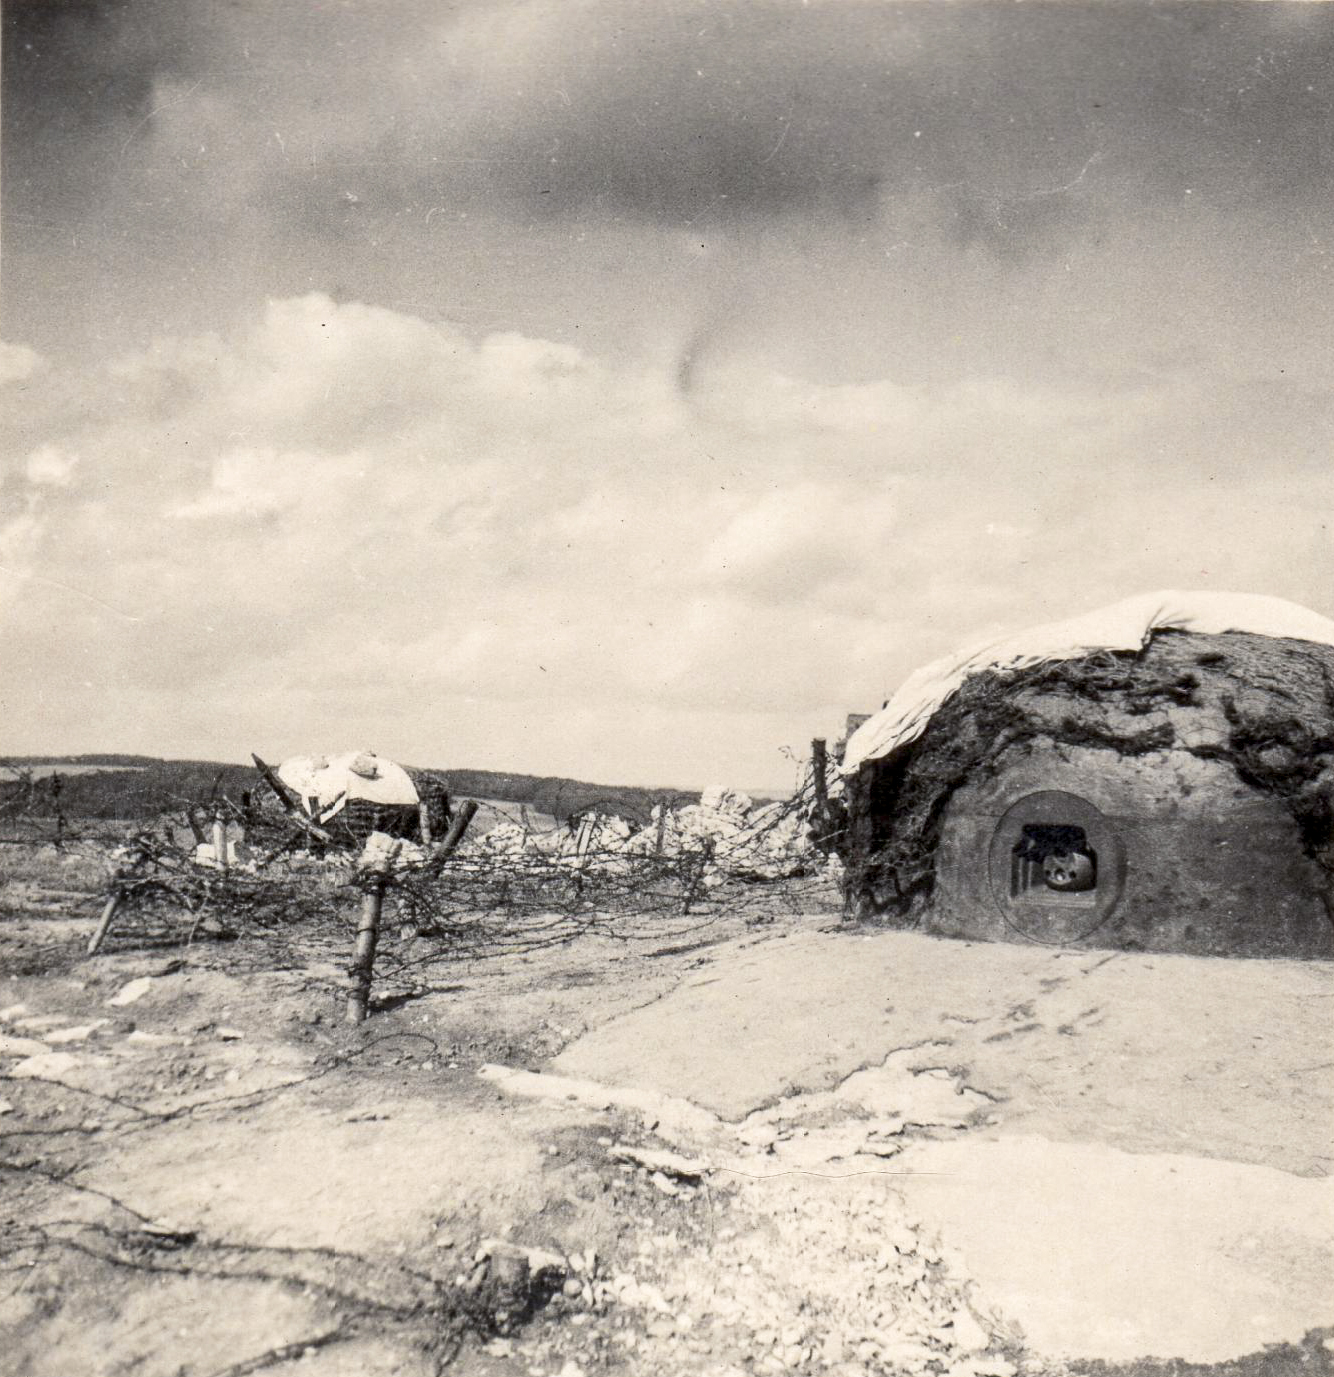 Ligne Maginot - HAUT POIRIER - (Ouvrage d'infanterie) - Le drapeau blanc sur les cloches du bloc 1
22.06.1940